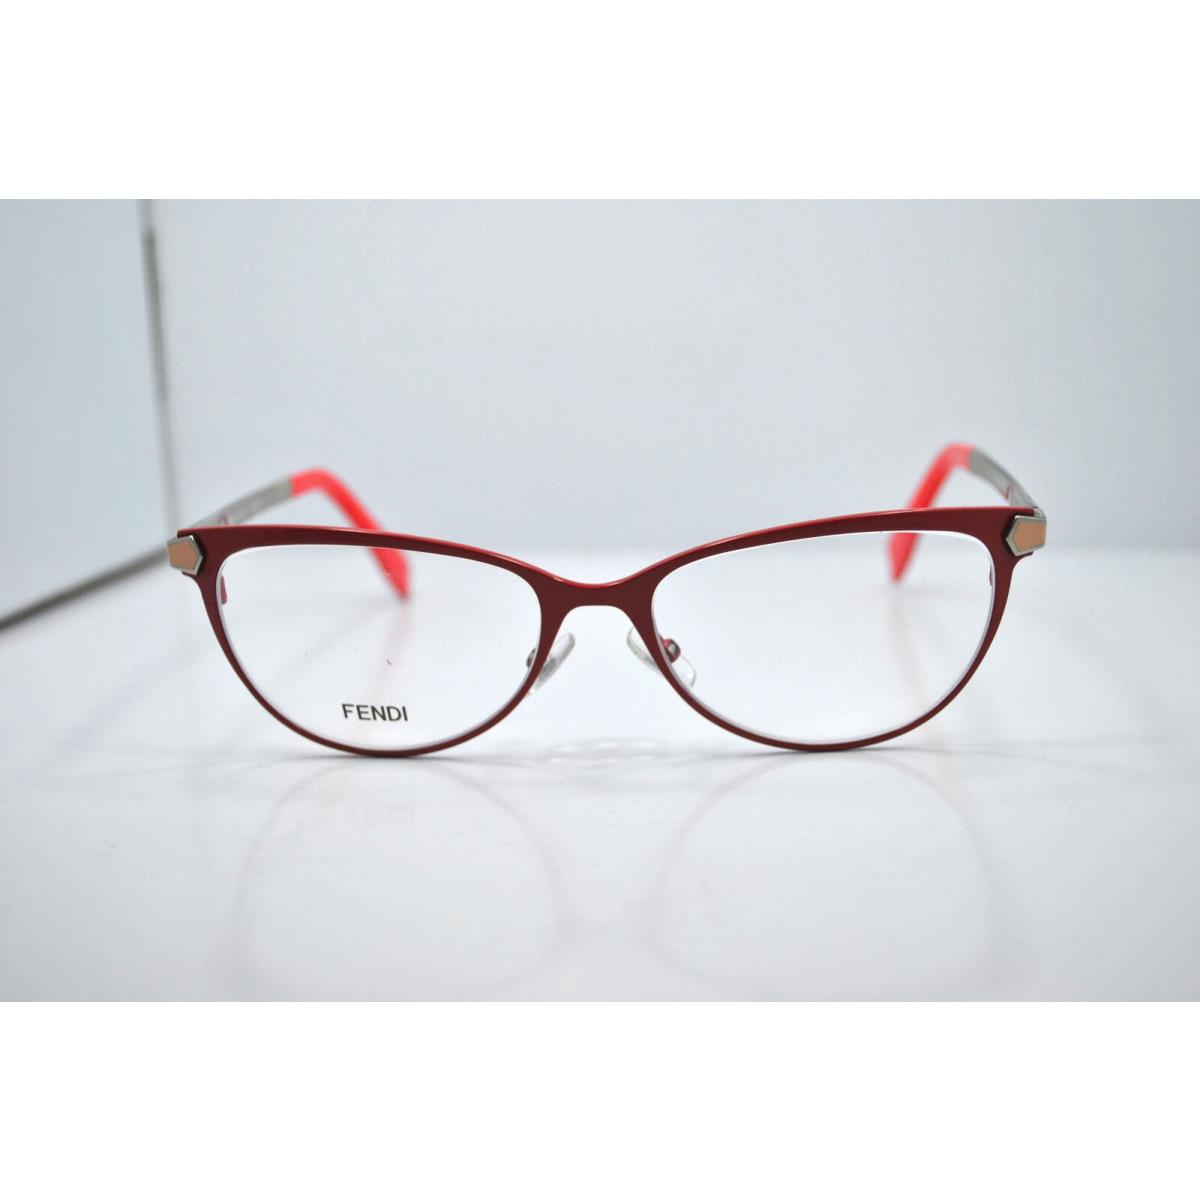 Fendi eyeglasses  - Red Frame 0